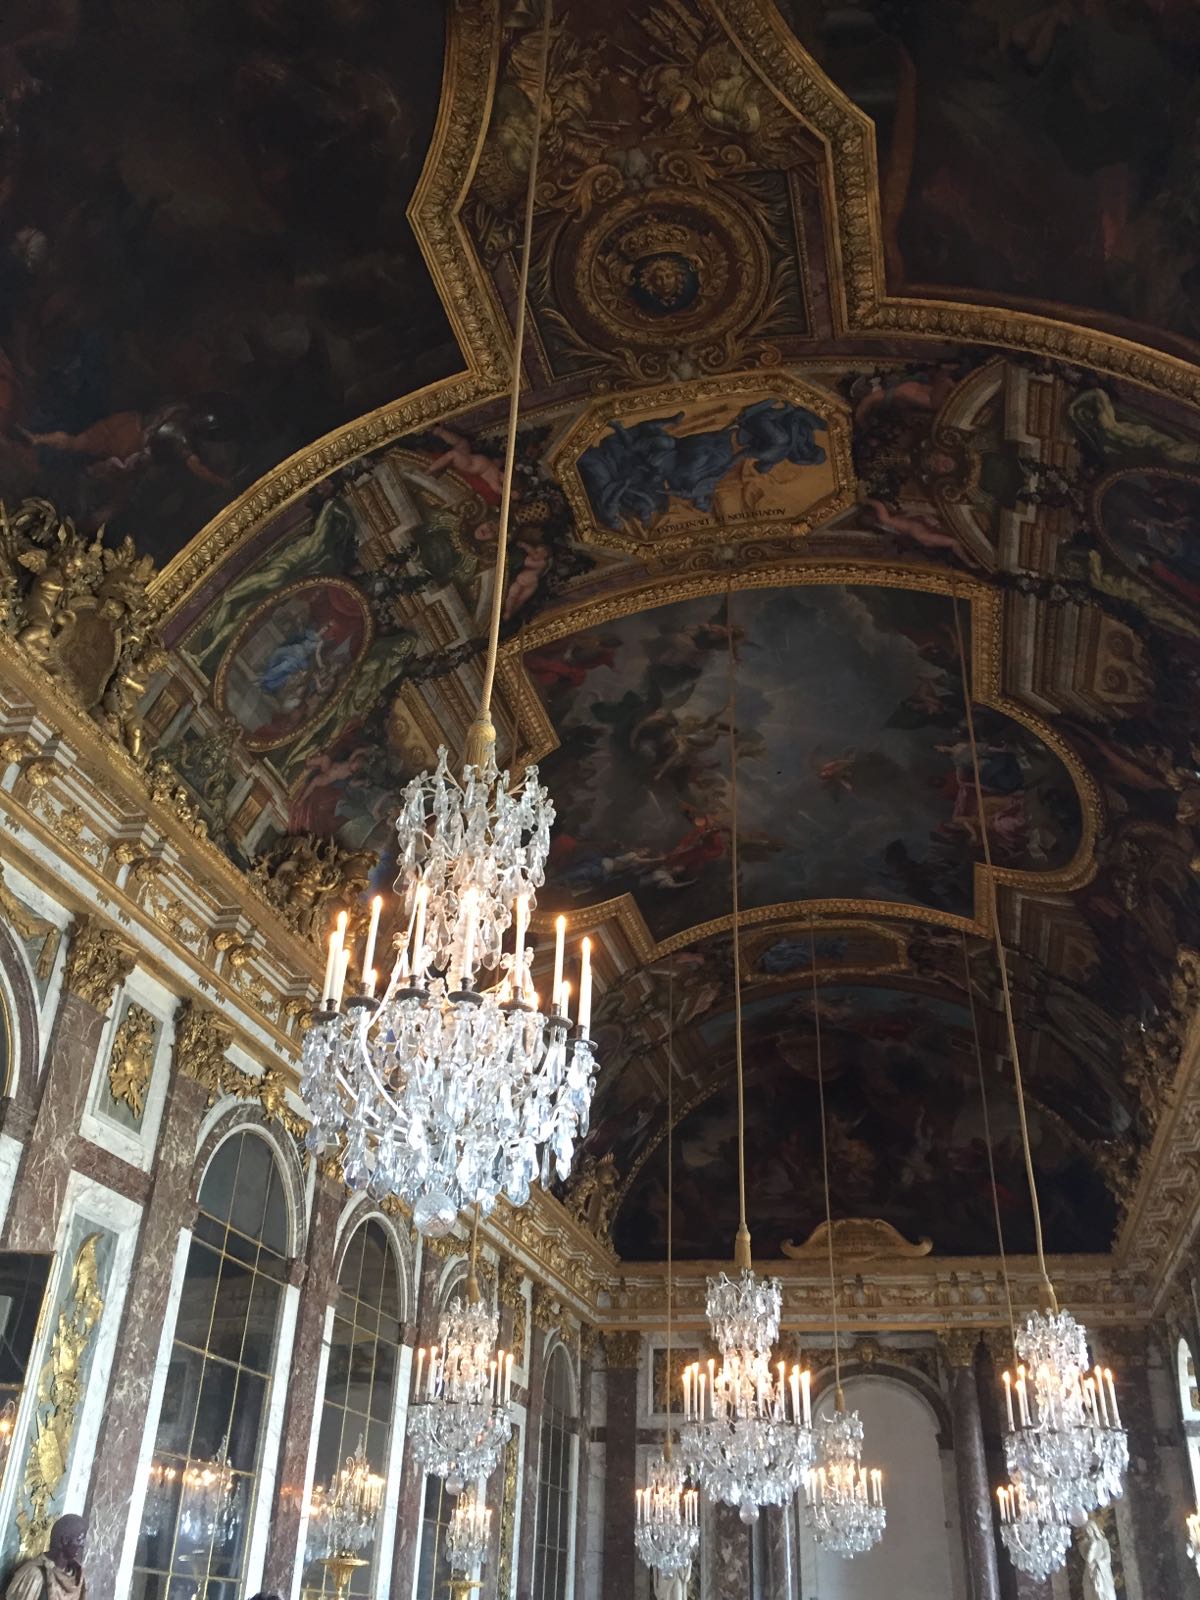 富丽堂皇的宫殿～路易十四果然引领时尚潮流